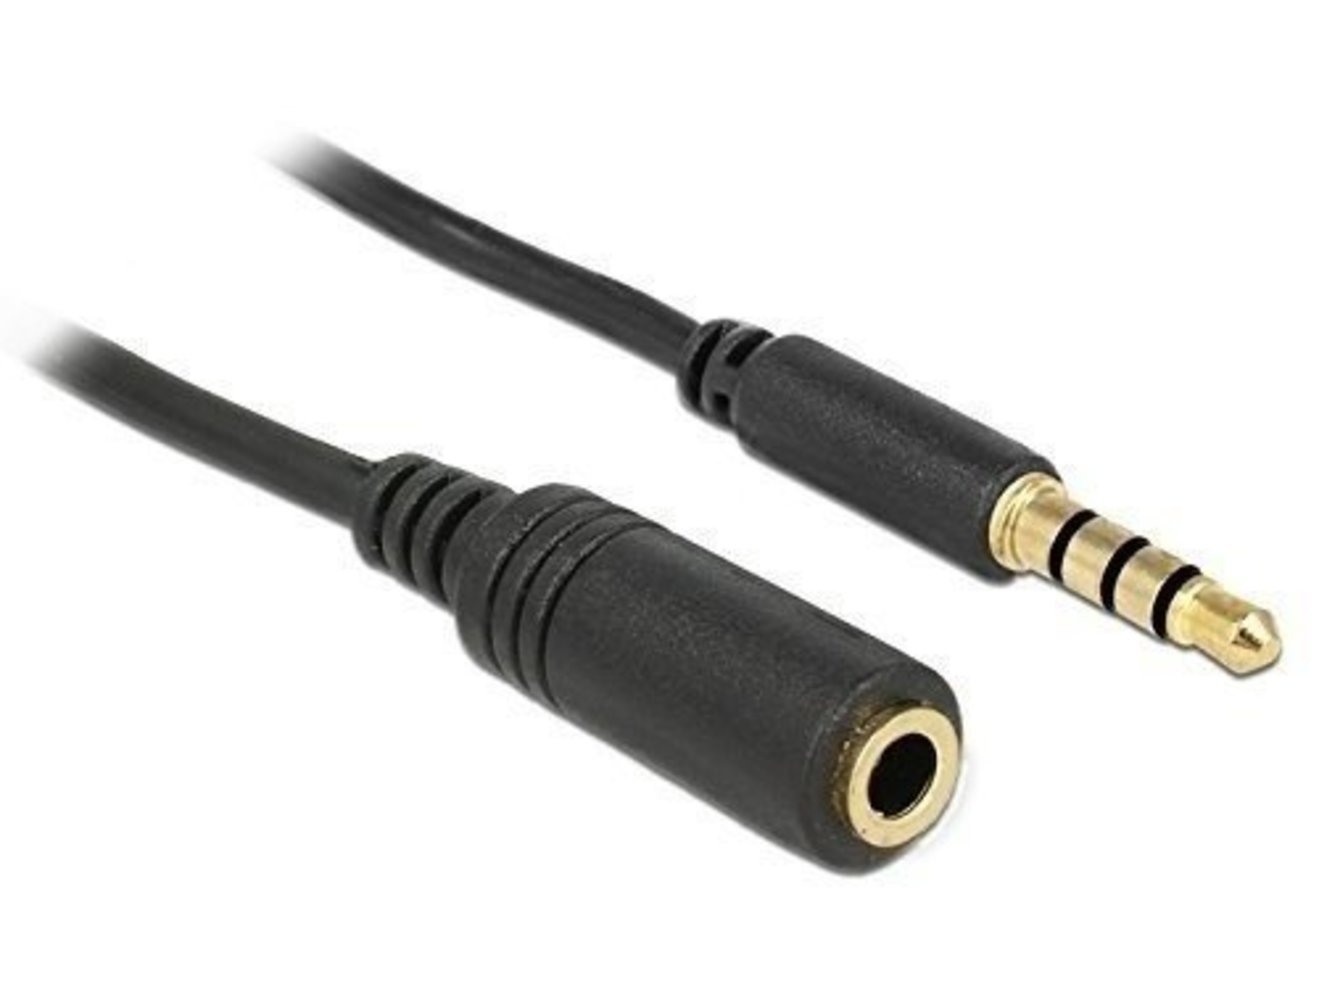 DELOCK Kabel Klinke Verlängerung 3.5mm Stecker > Buchse 4 Pin IPhone 1.0m - Schwarz | Hochwertiges Audio-Verlängerungskabel